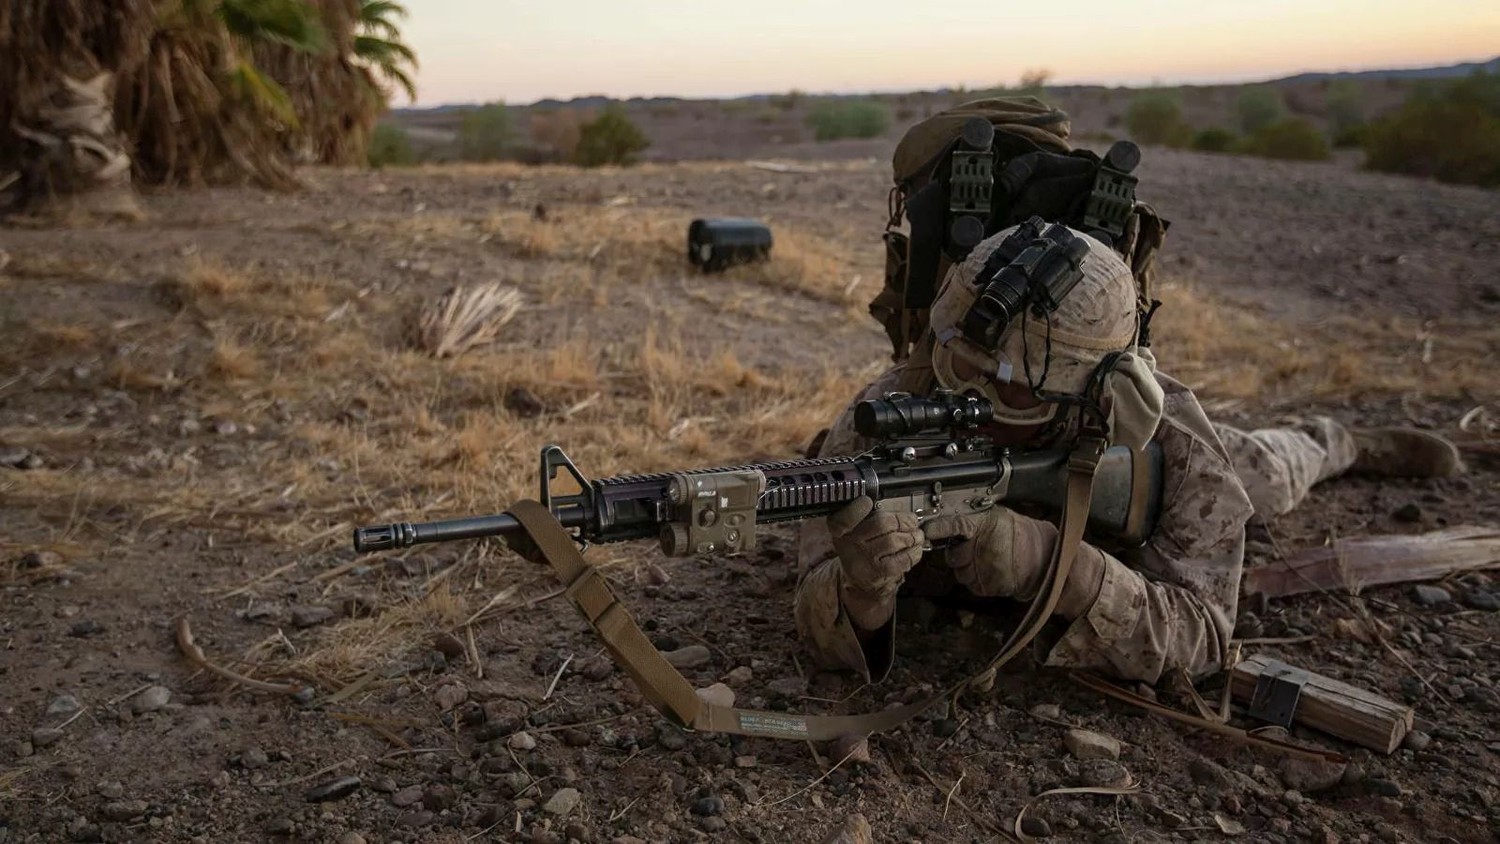 "Чип вживляют в мозг": раскрыты детали программы солдат-киборгов в США